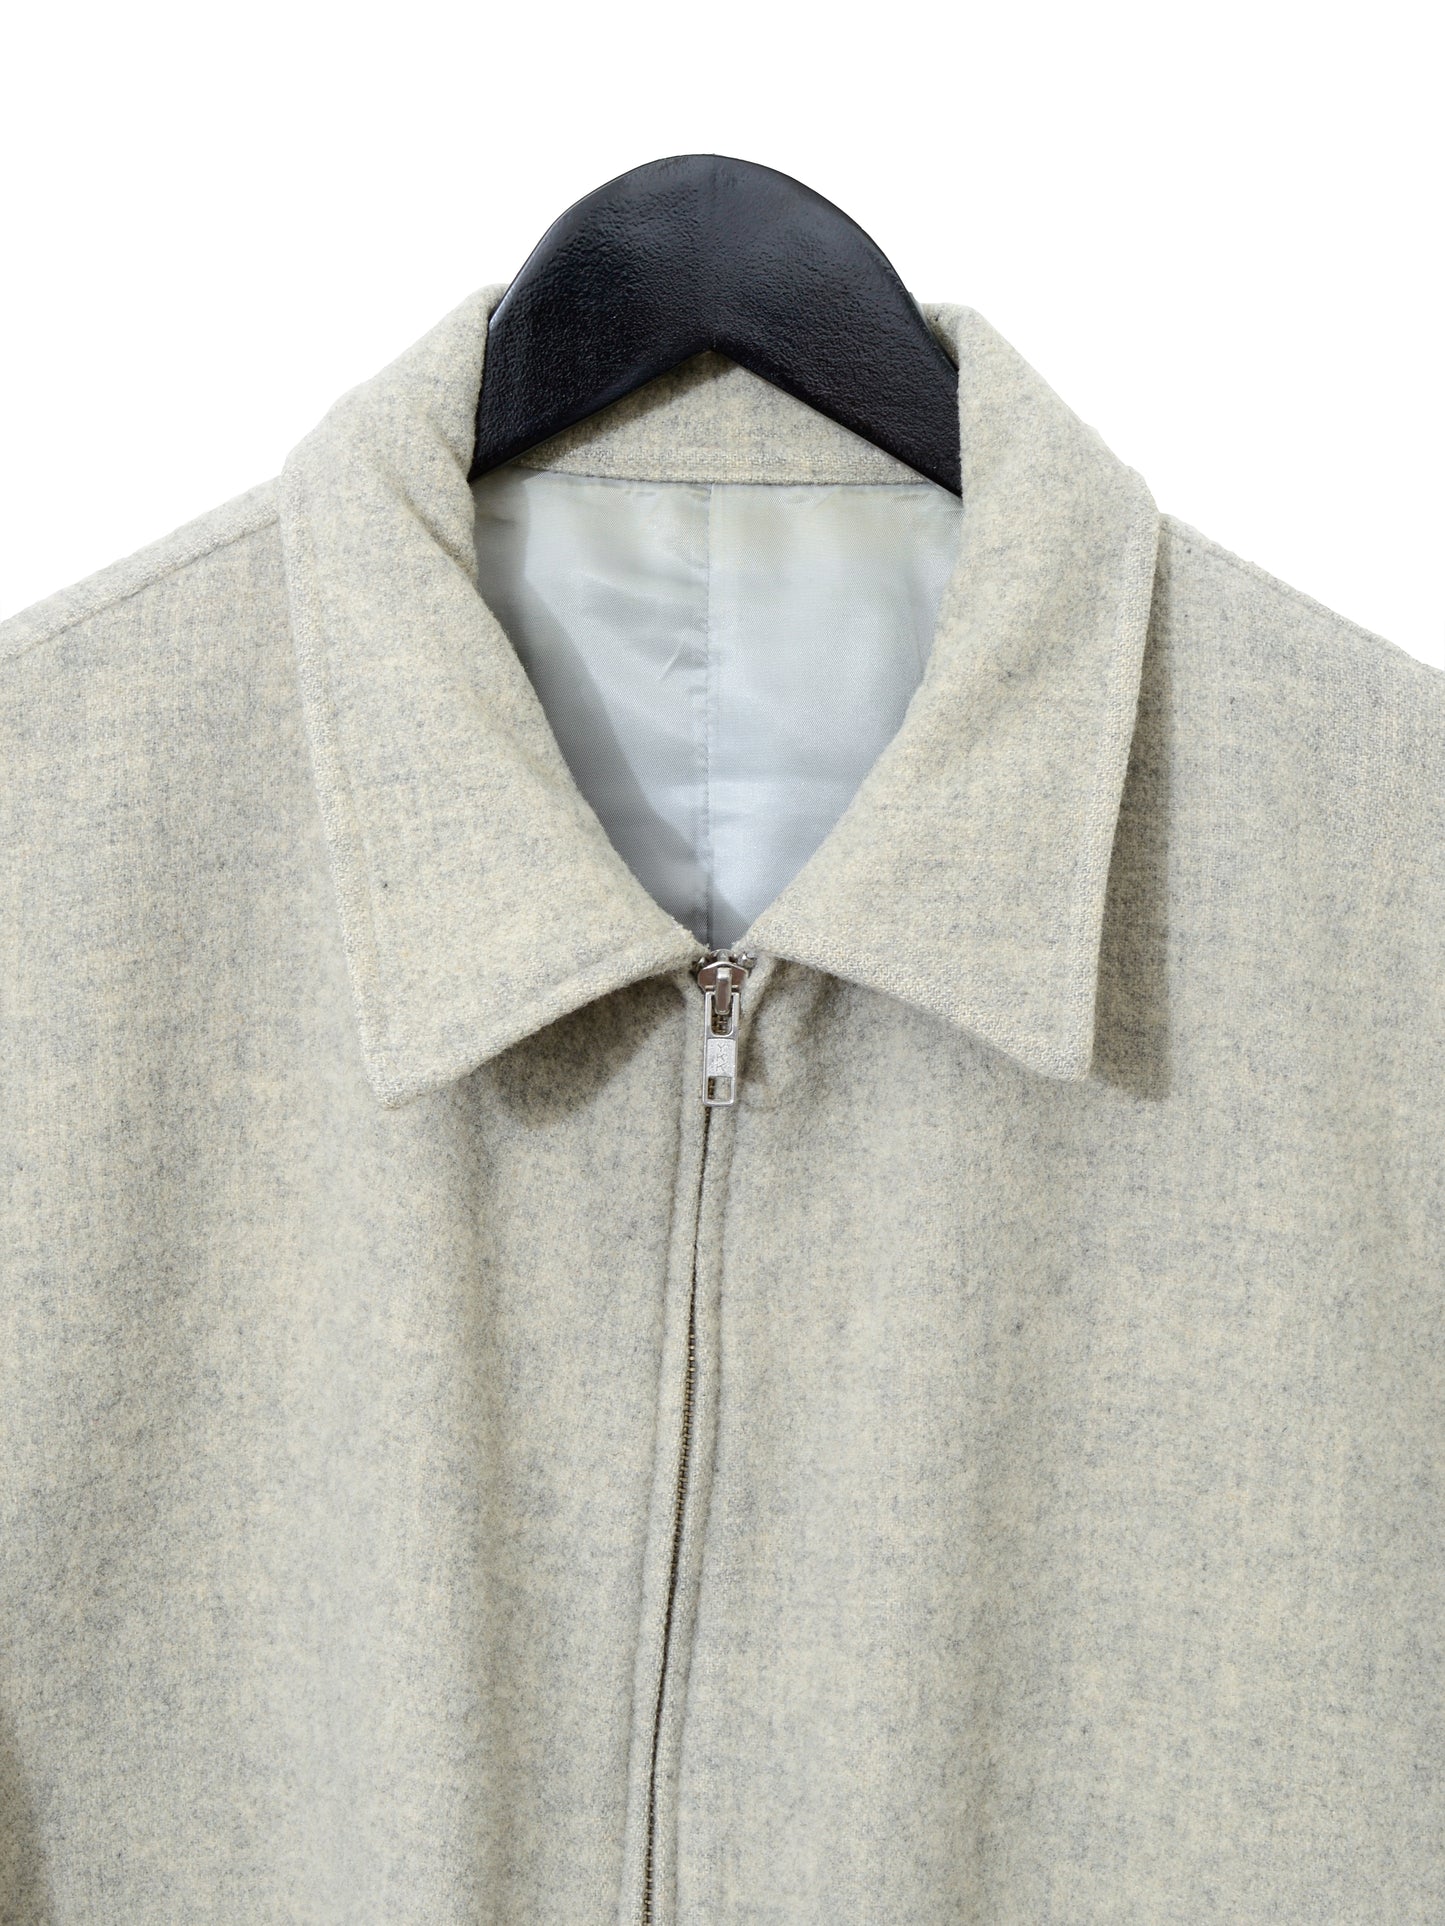 zip front jacket bone ∙ melton wool nylon ∙ large